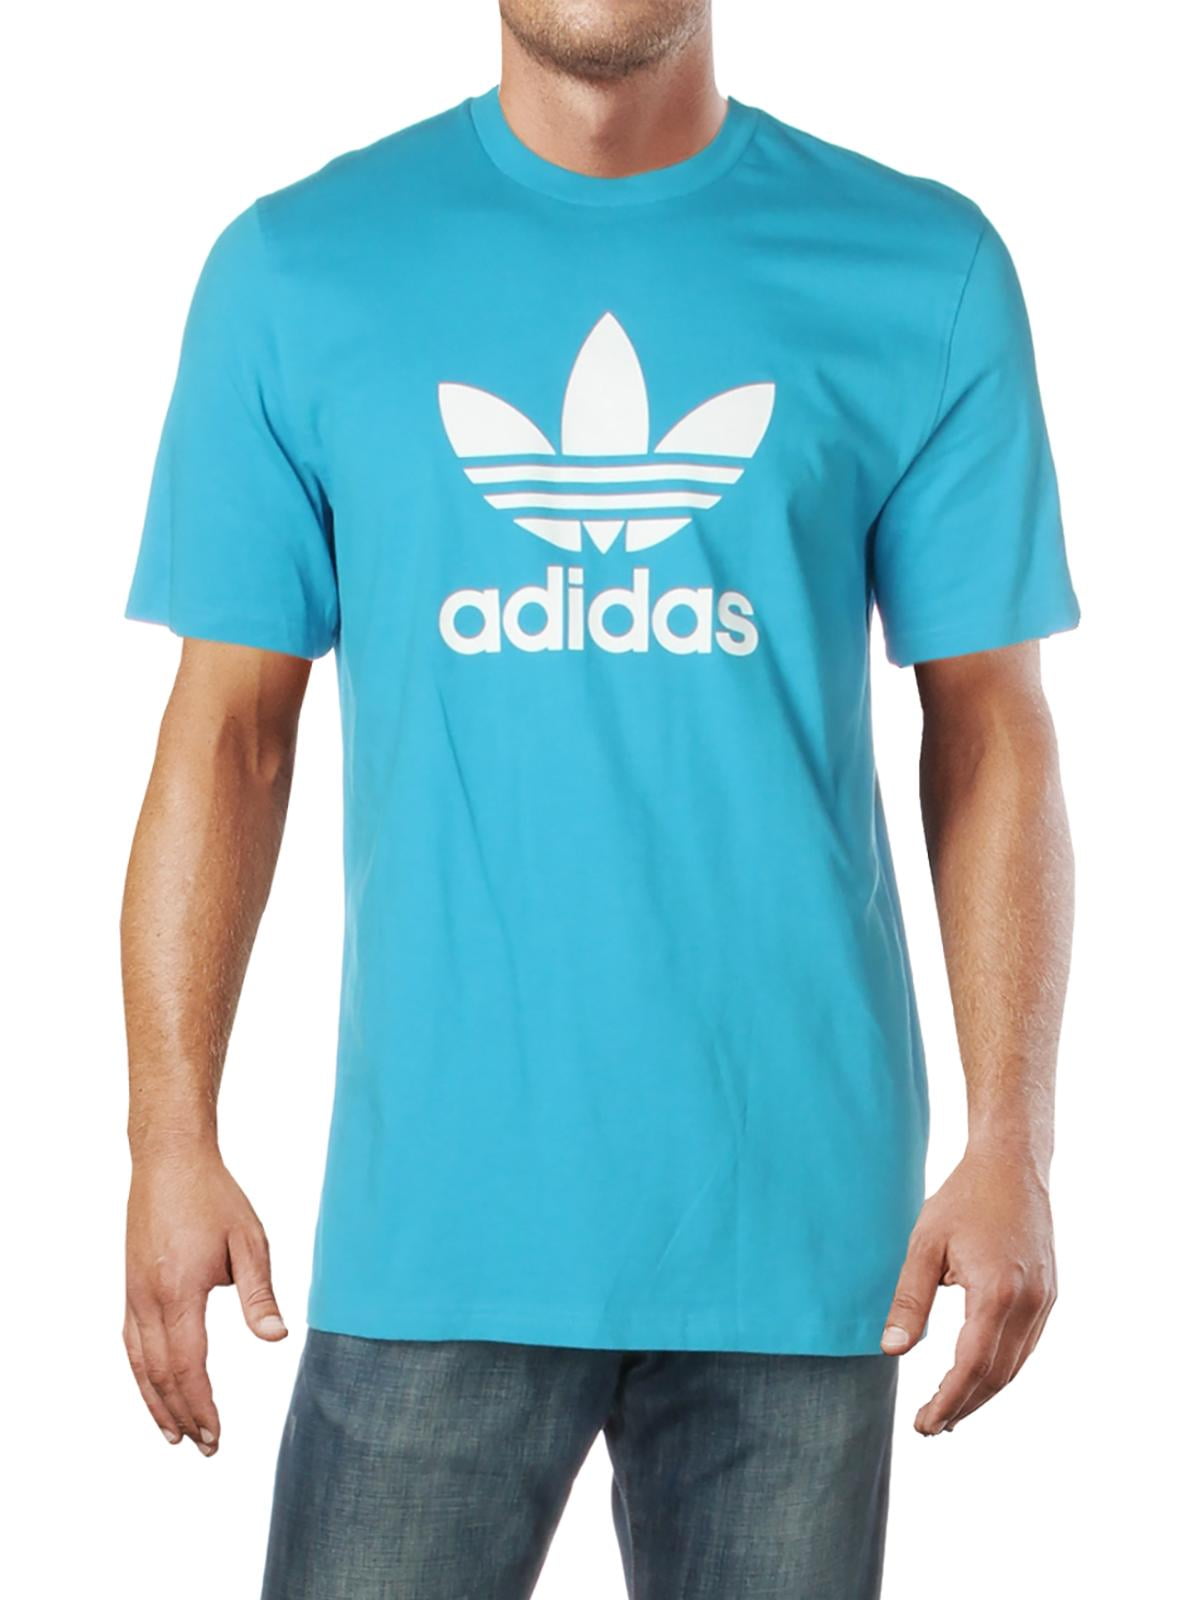 Адидас жив. Футболка adidas Originals мужская. Адидас simple. Adidas t Shirt. Футболка adidas Moscow Trefoil 2.0.